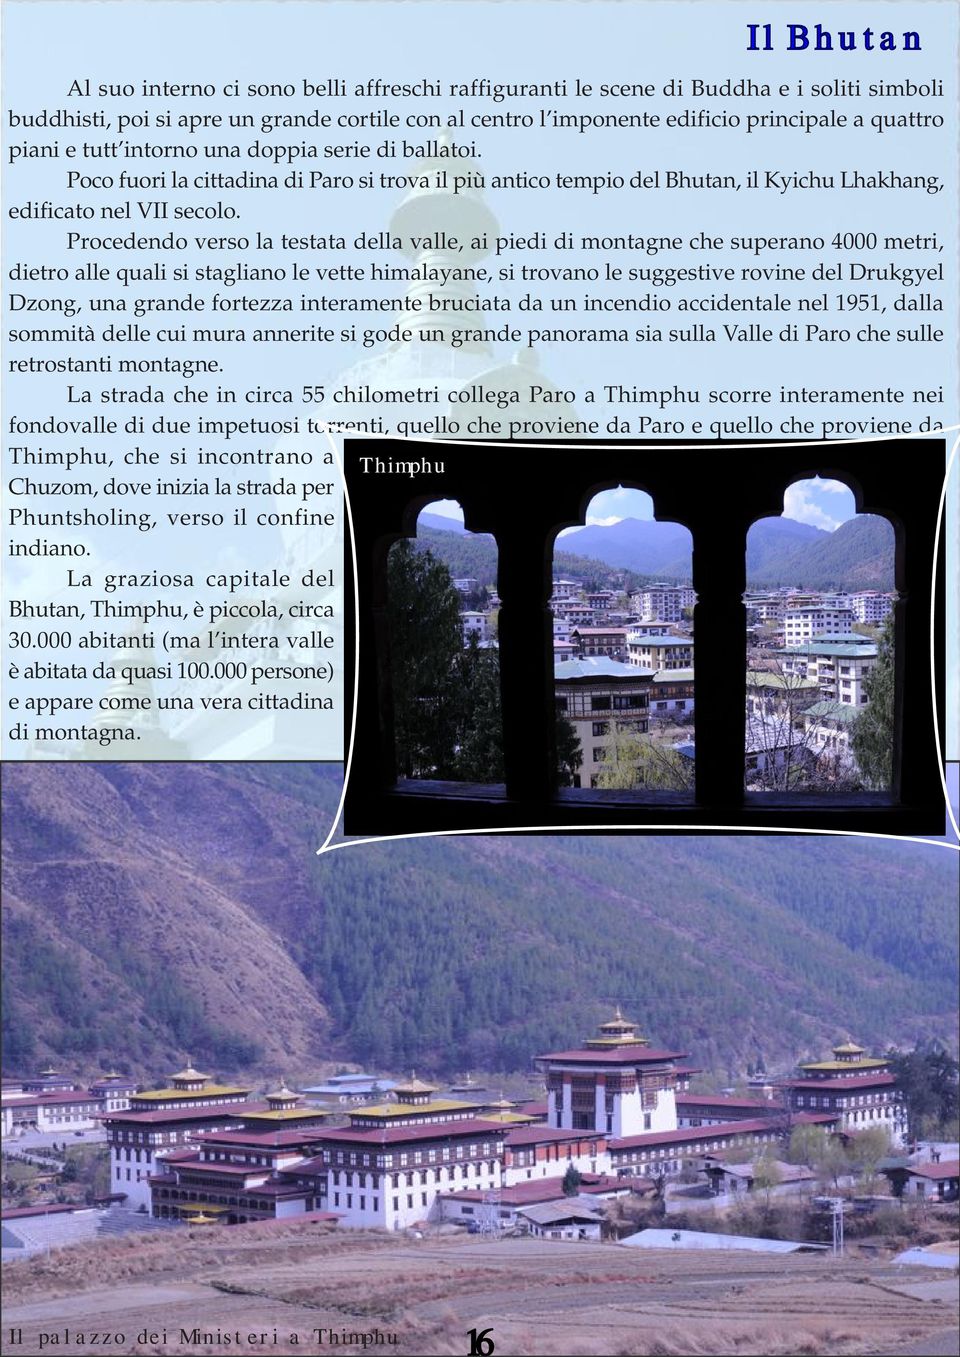 Procedendo verso la testata della valle, ai piedi di montagne che superano 4000 metri, dietro alle quali si stagliano le vette himalayane, si trovano le suggestive rovine del Drukgyel Dzong, una